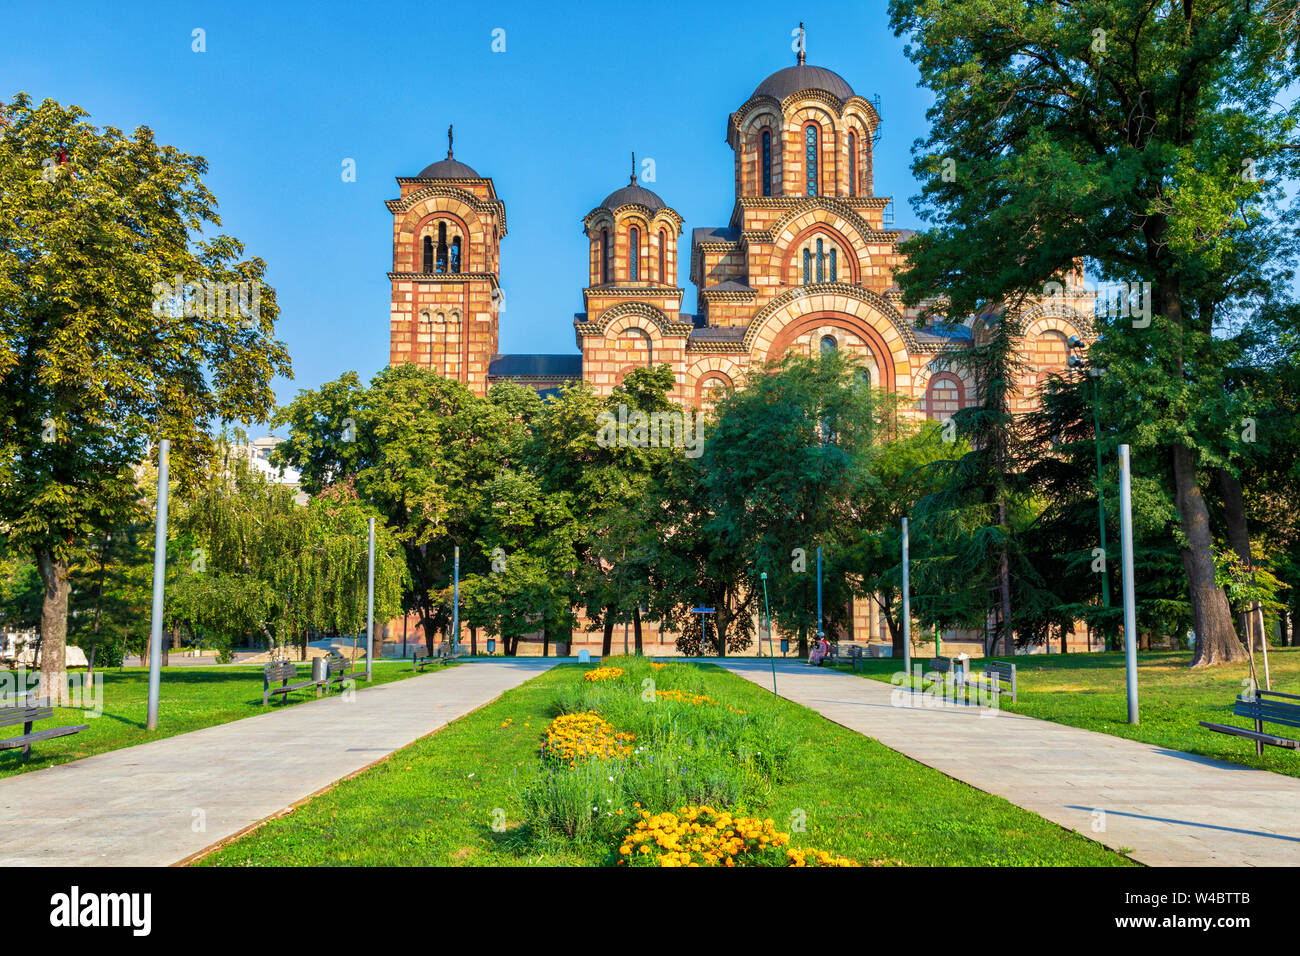 St. Mark Church in the Tasmajdan park in Belgrade. Stock Photo